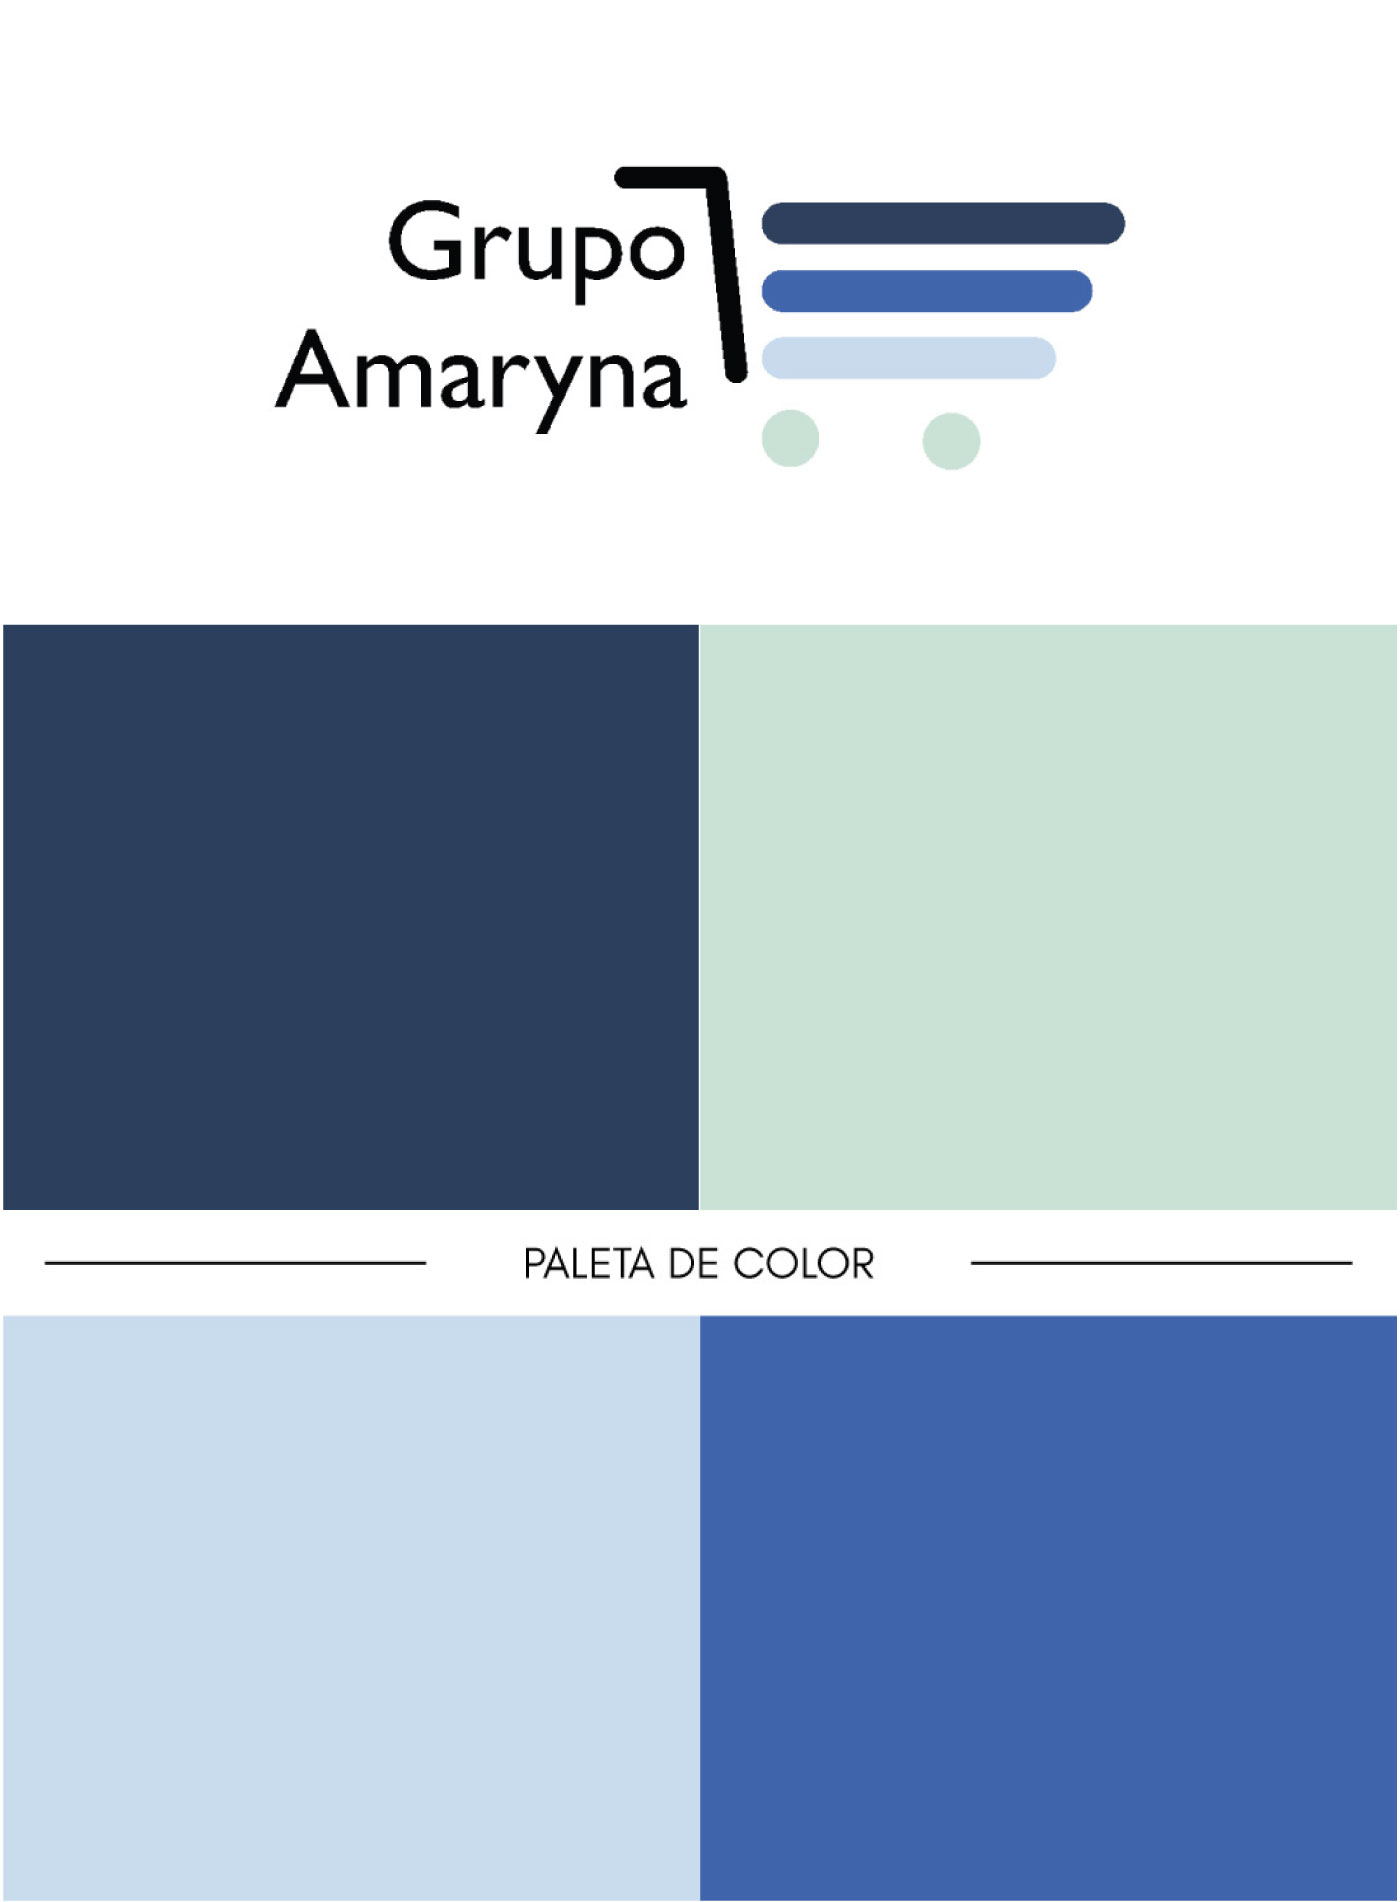 Paleta de colores Grupo Amaryna